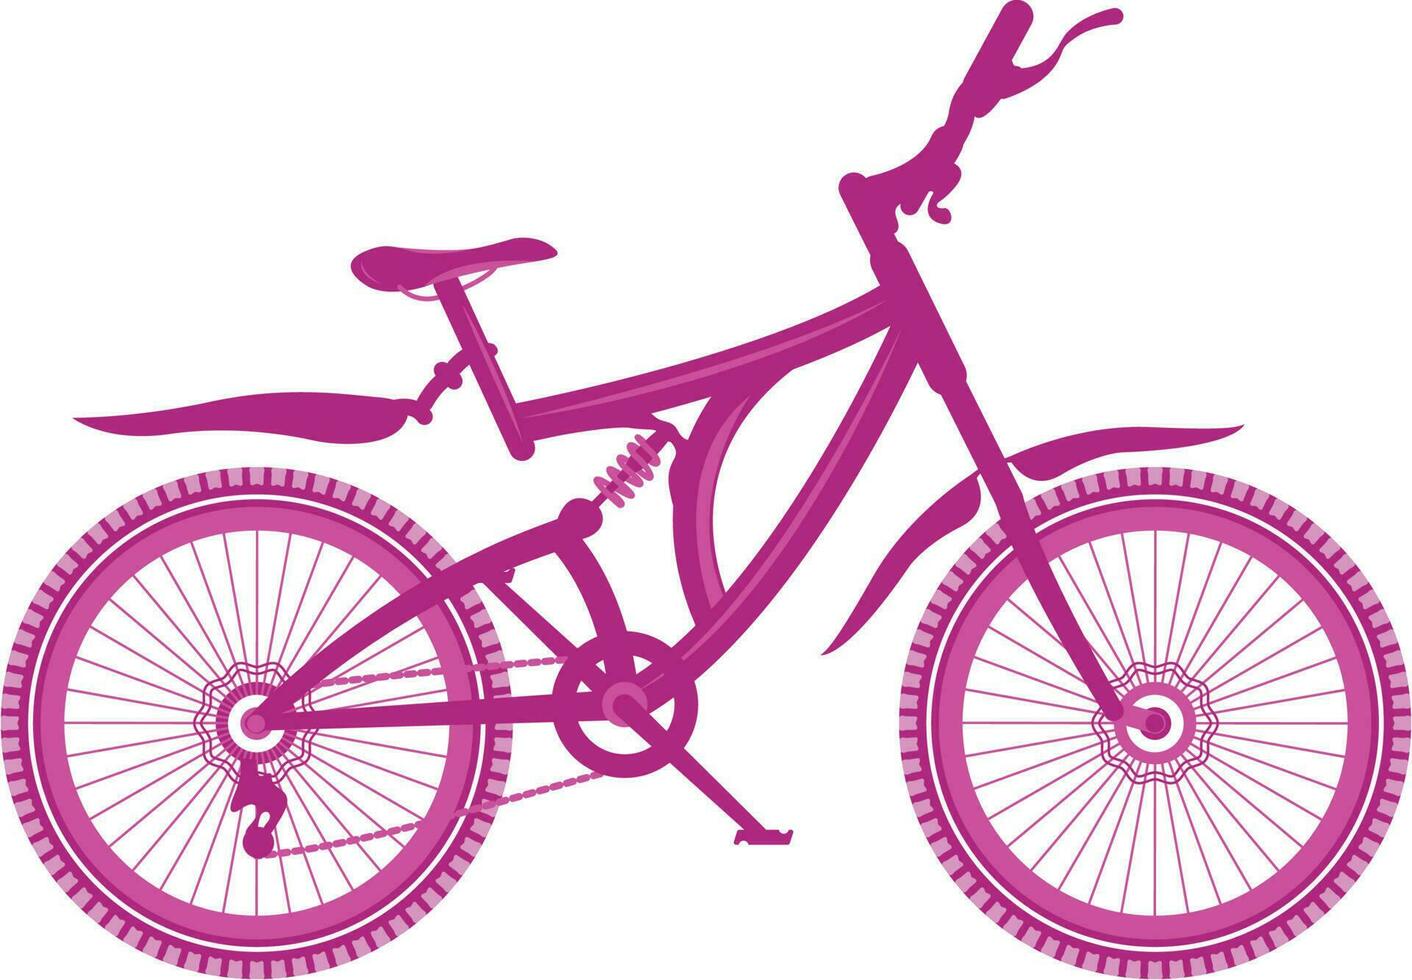 cykel vektor illustration